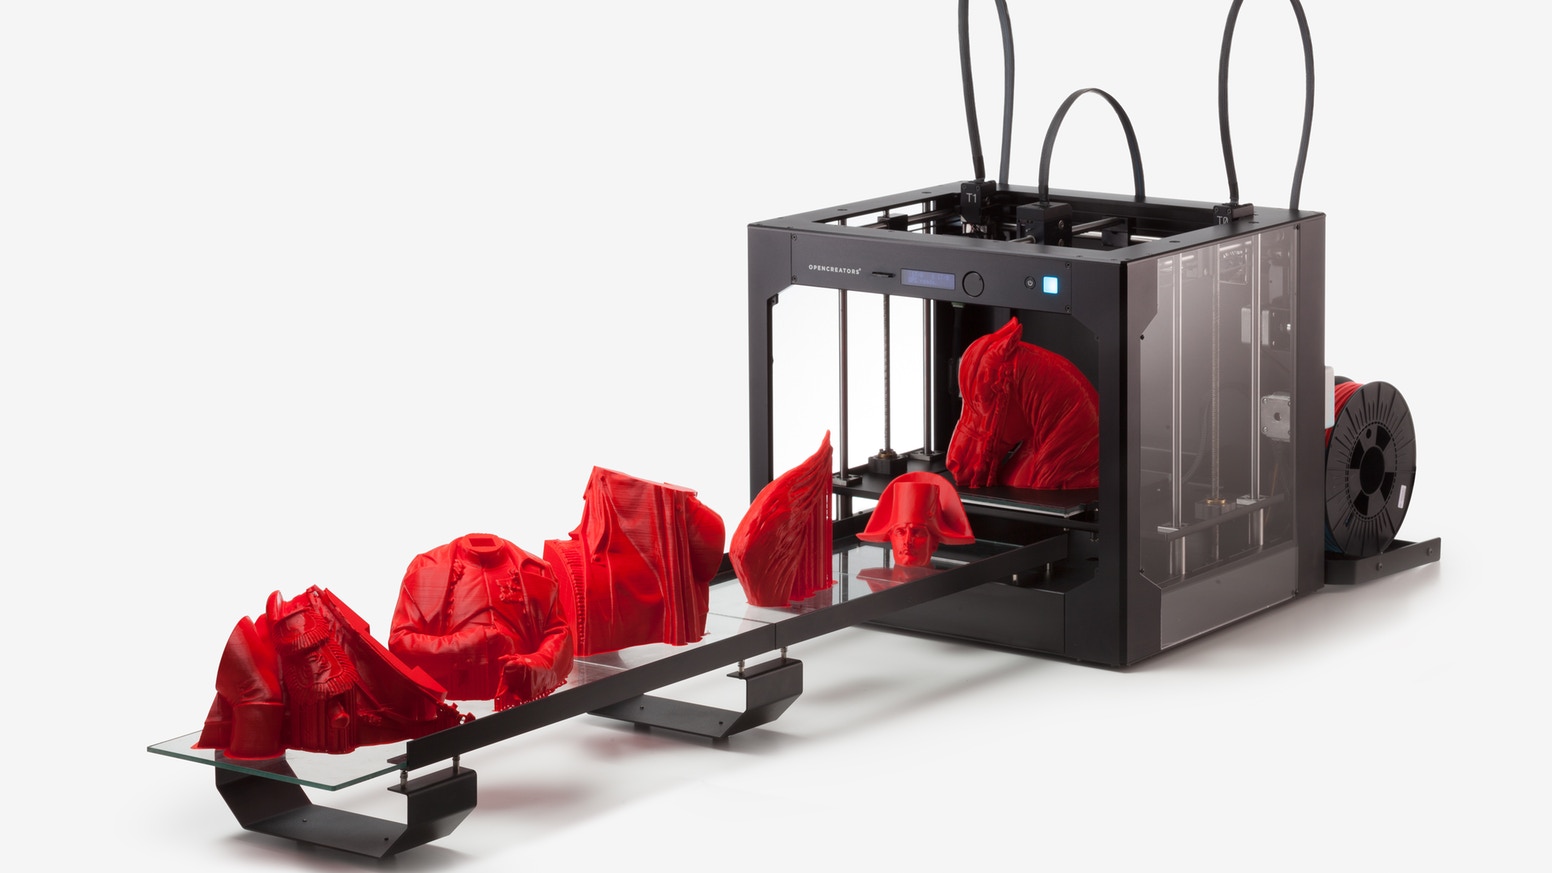 Geleceğin ev hobileri arasında 3D Yazıcılar yer alacak!..